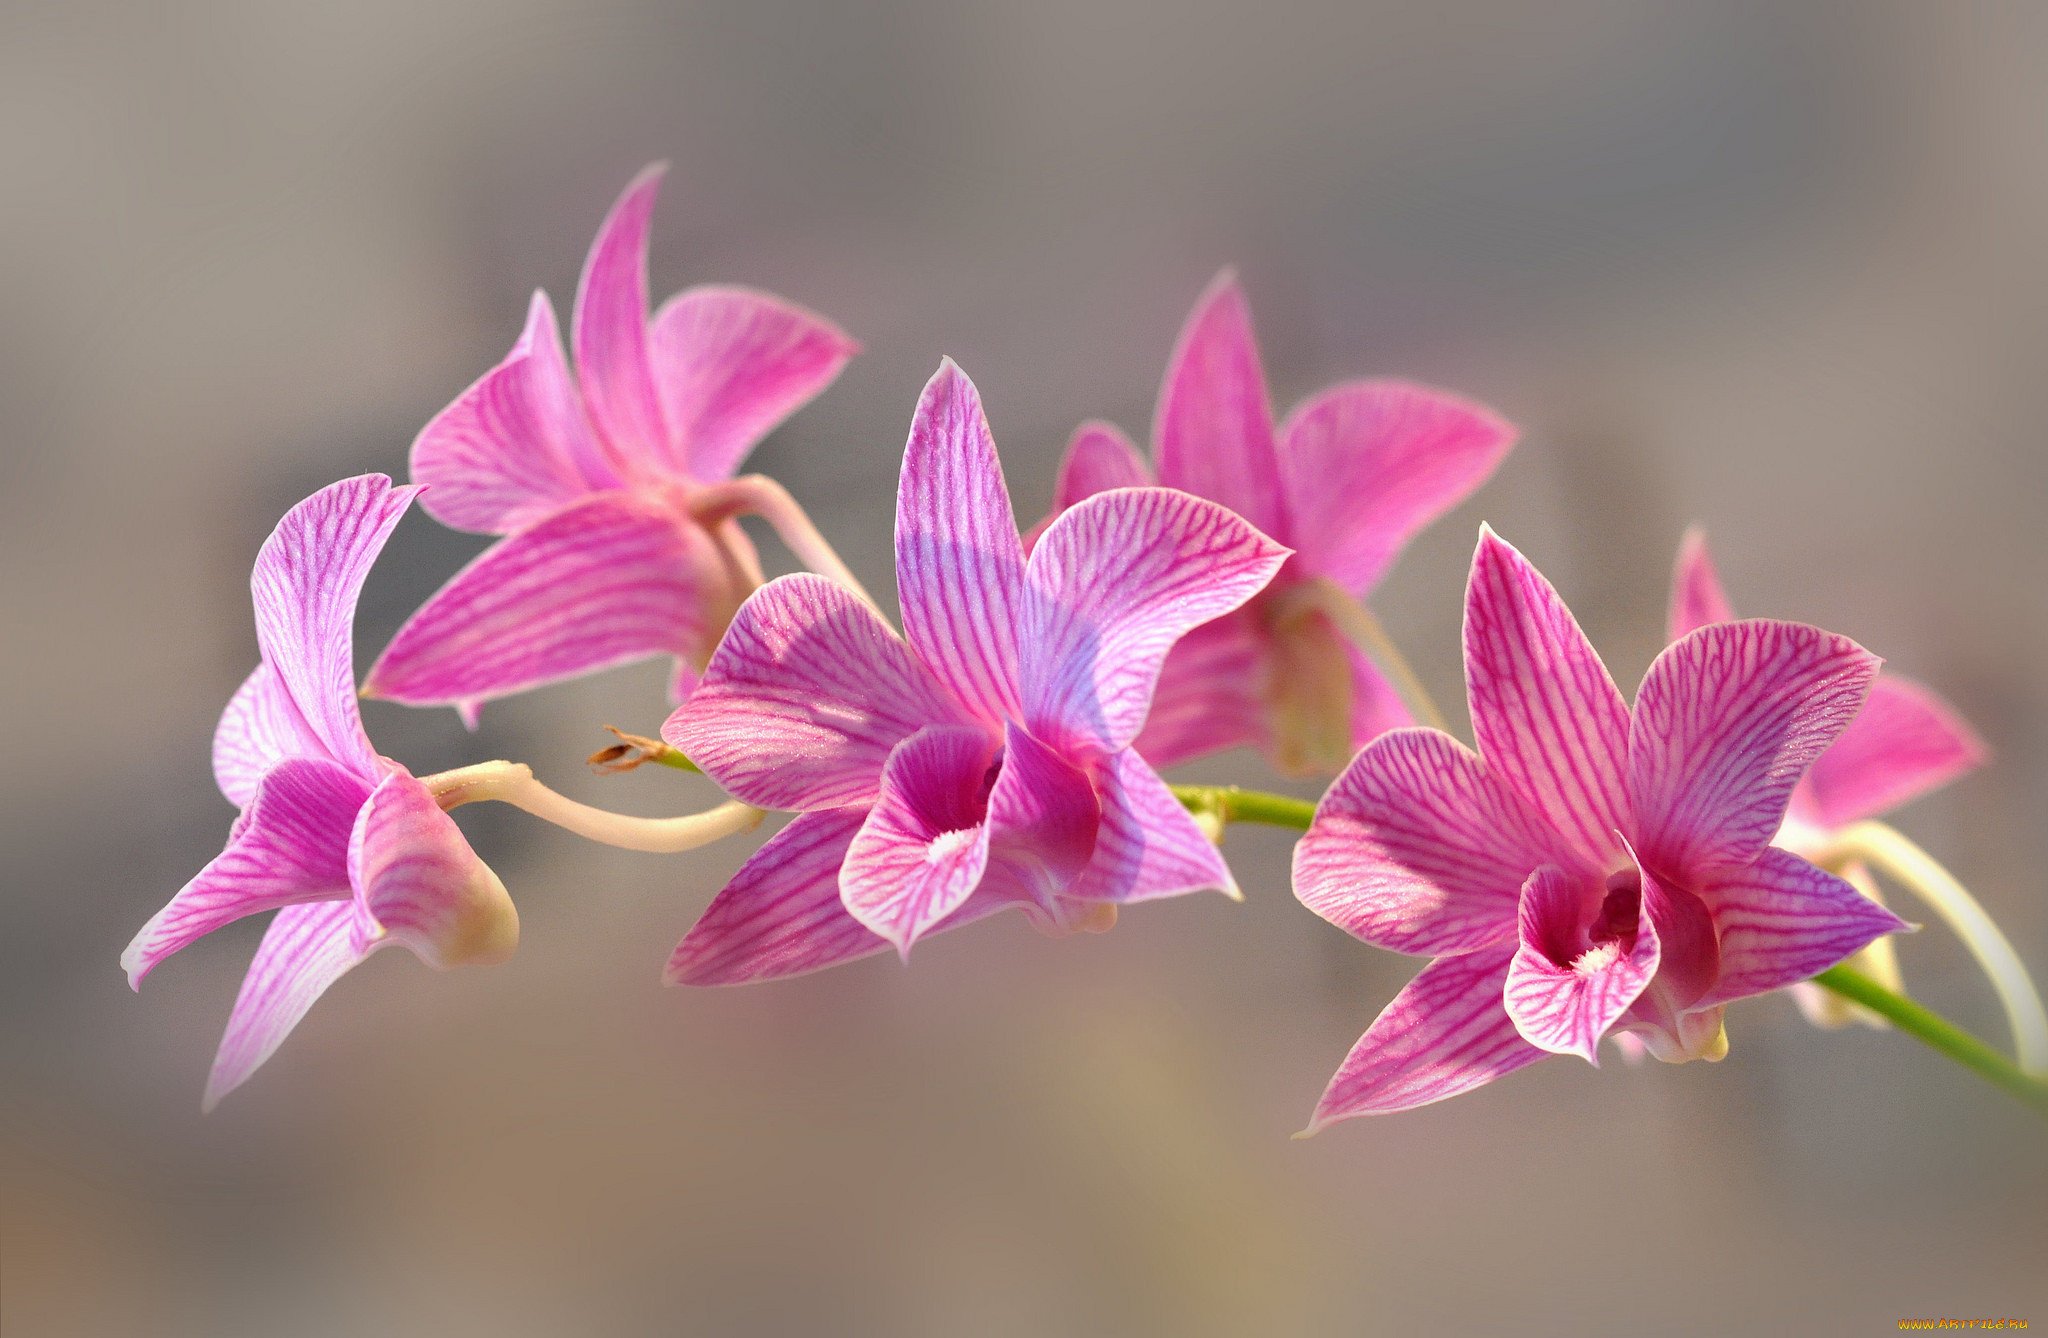 Flowers orchids. Соцветие орхидеи. Орхидея фаленопсис соцветие. Орхидея Exotica. Орхидея Phalaenopsis spotted.